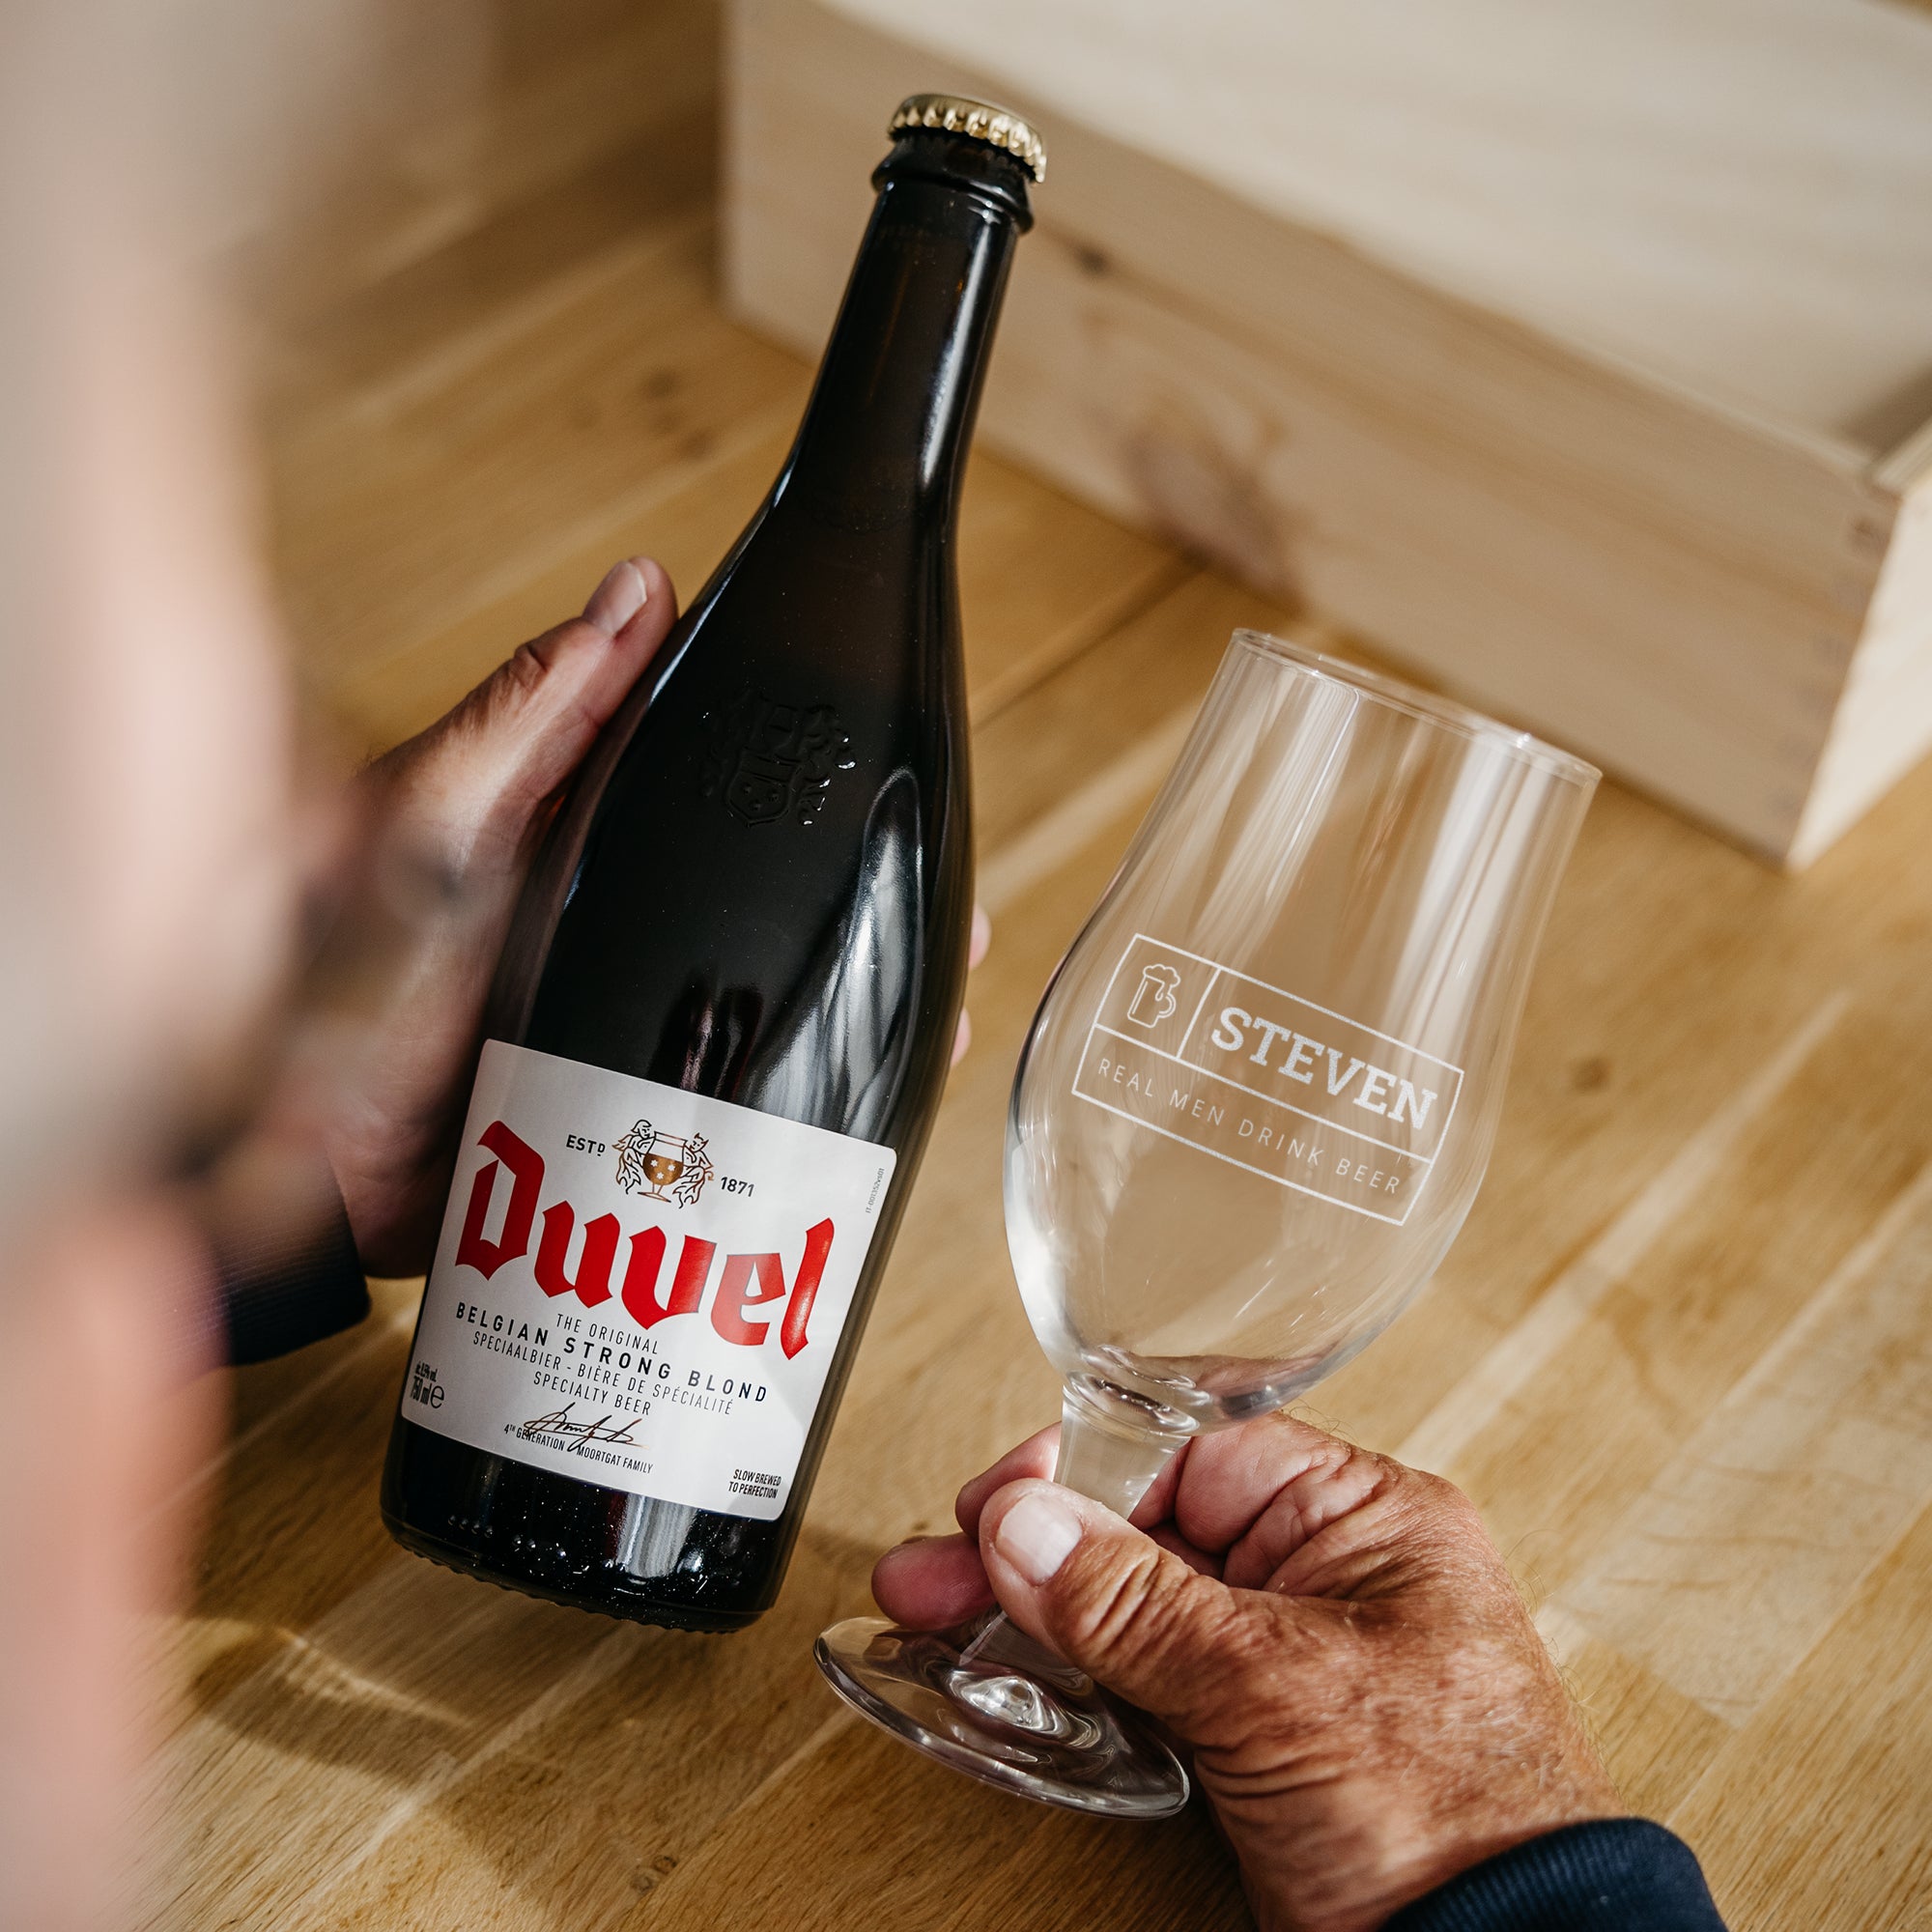 Personalised beer gift - Duvel Moortgat - Engraved glass